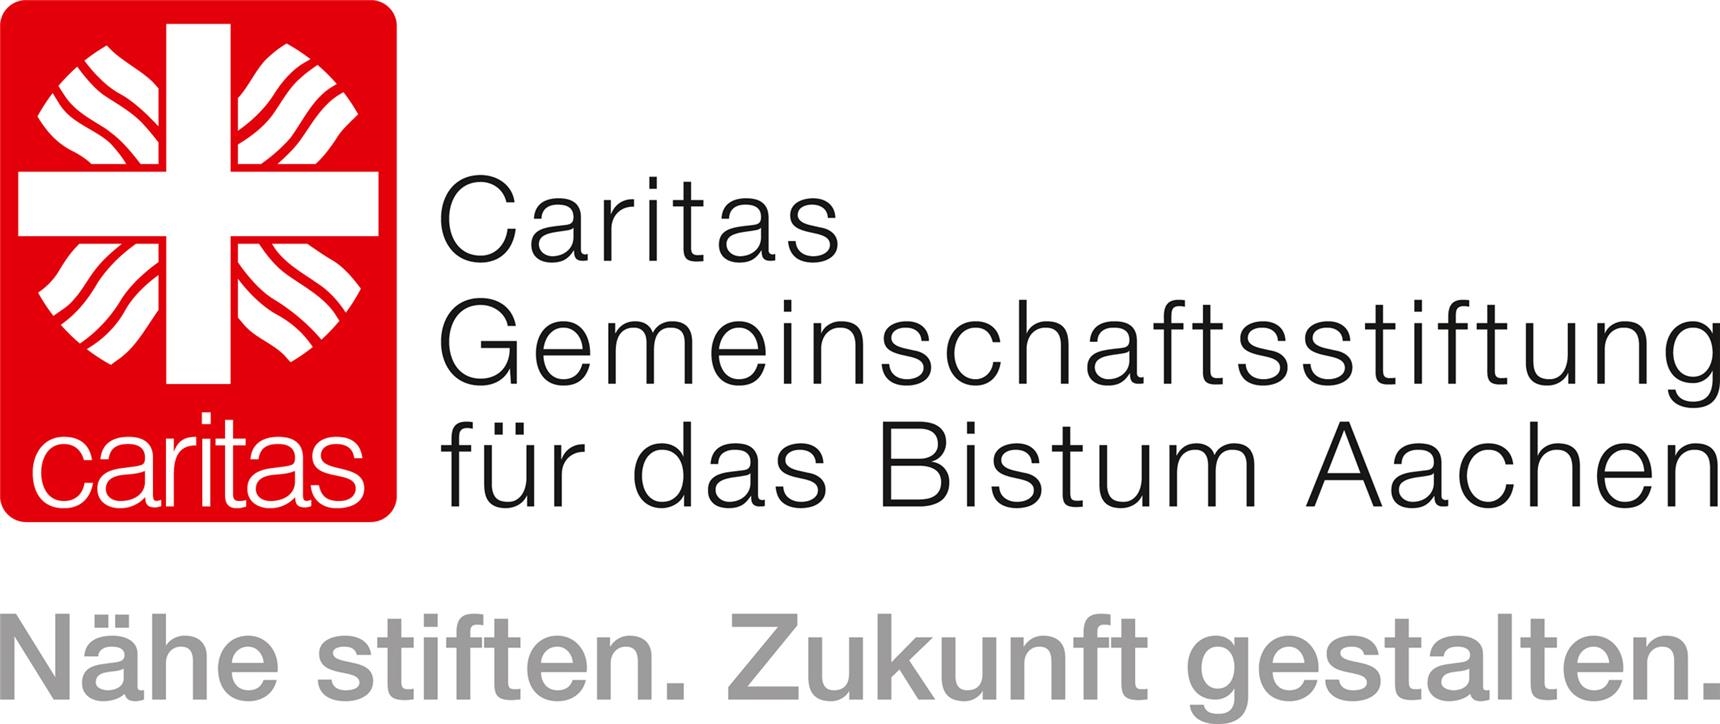 Logo der Caritas-Gemeinschaftsstiftung für das Bistum Aachen